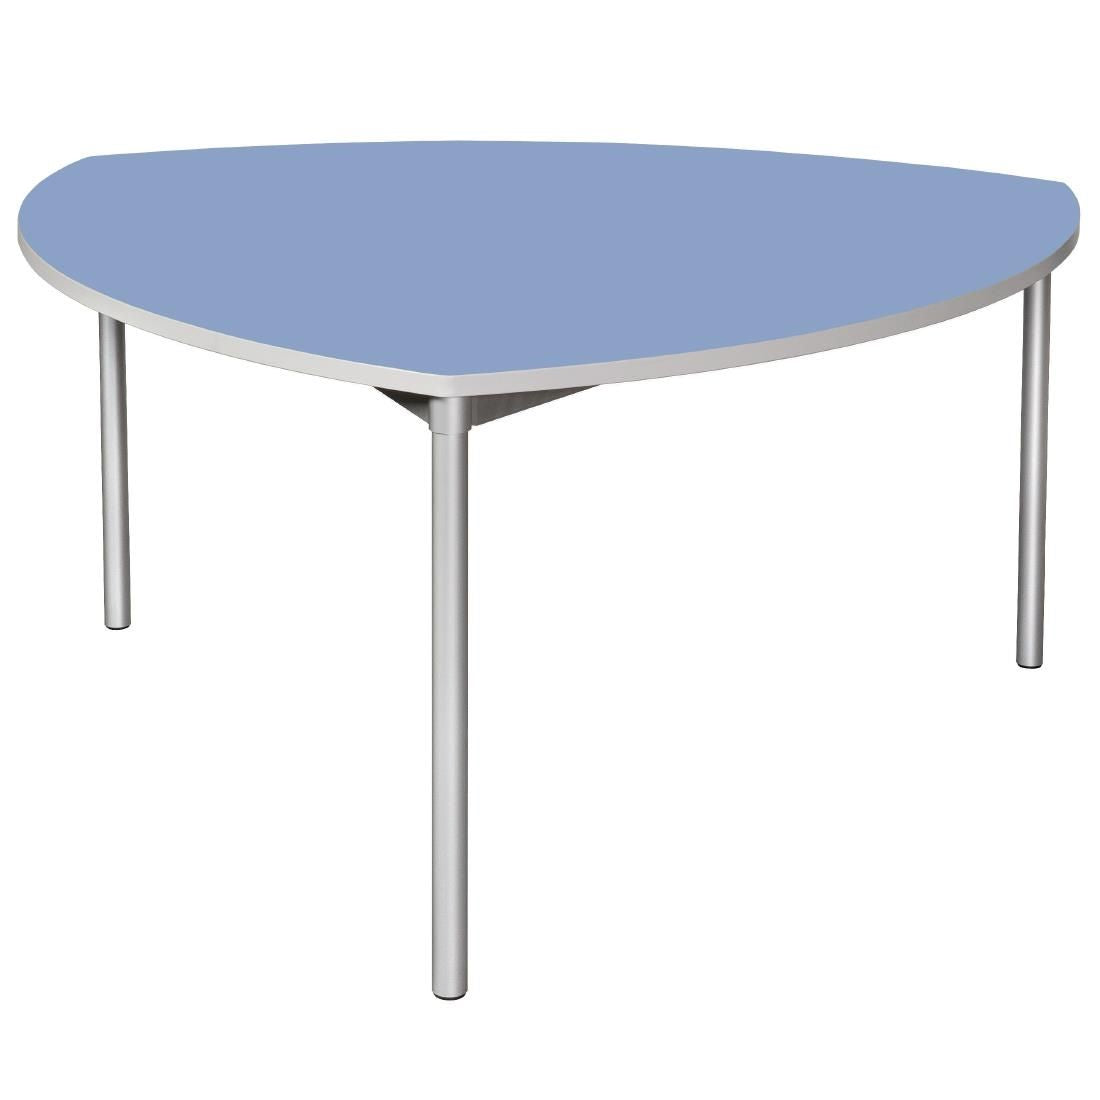 Gopak Enviro Indoor Campanula Blue Shield Dining Table 1500mm JD Catering Equipment Solutions Ltd